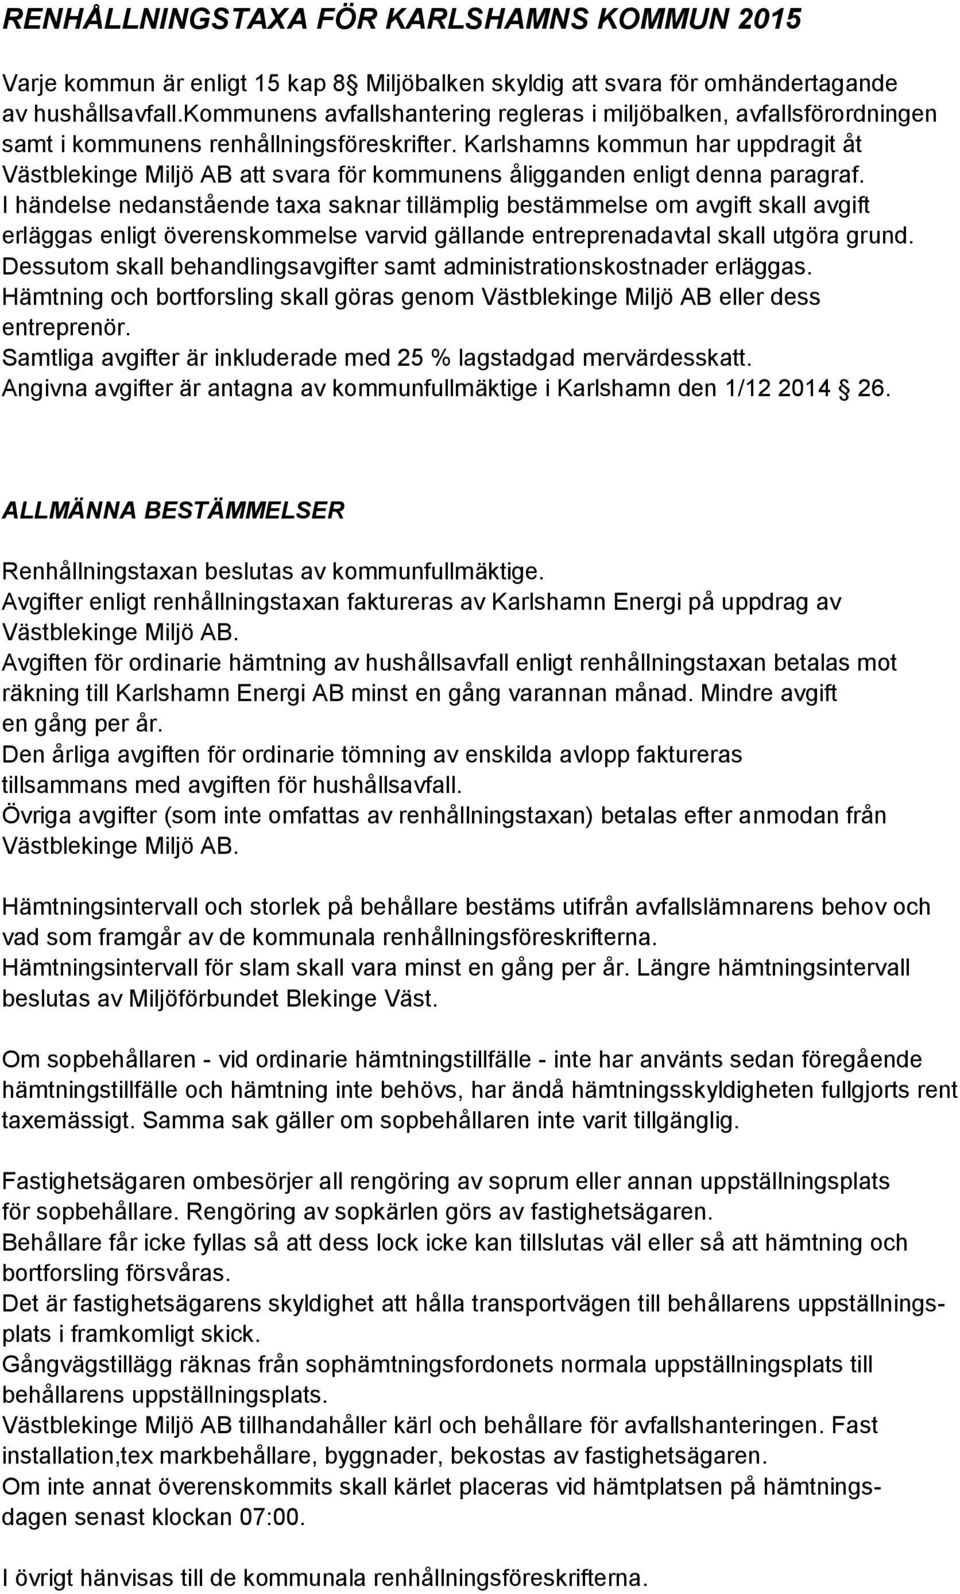 Karlshamns kommun har uppdragit åt Västblekinge Miljö AB att svara för kommunens åligganden enligt denna paragraf.